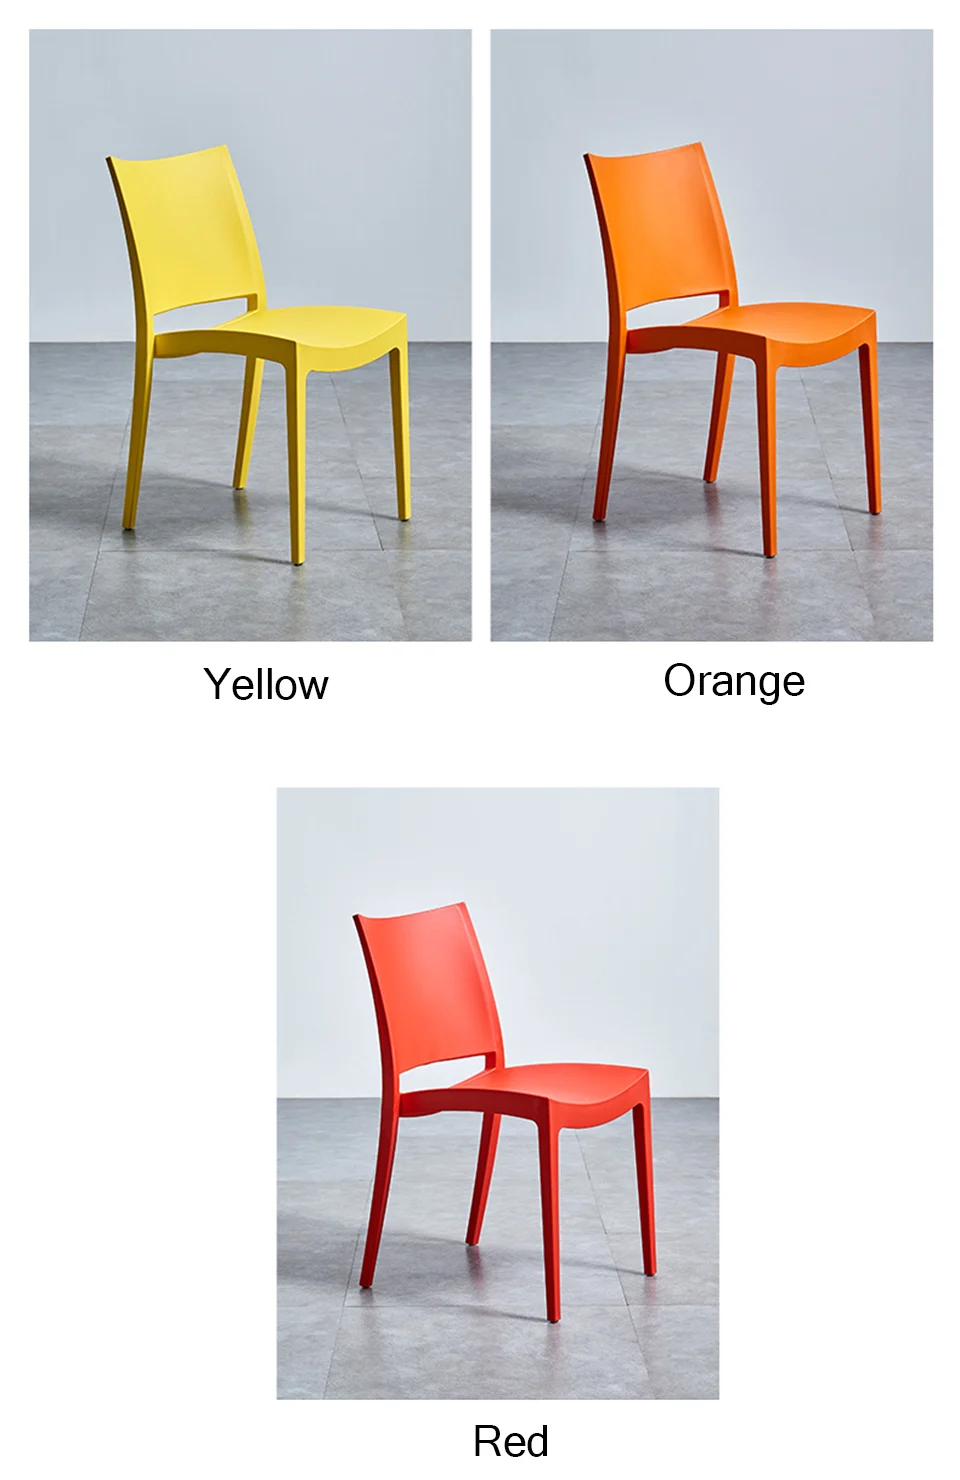 Современные стильные пластиковые стулья обеденные стулья для столовой, ресторанов, мебели, гостиной, спальни, кухни, кафе столовая, стулья